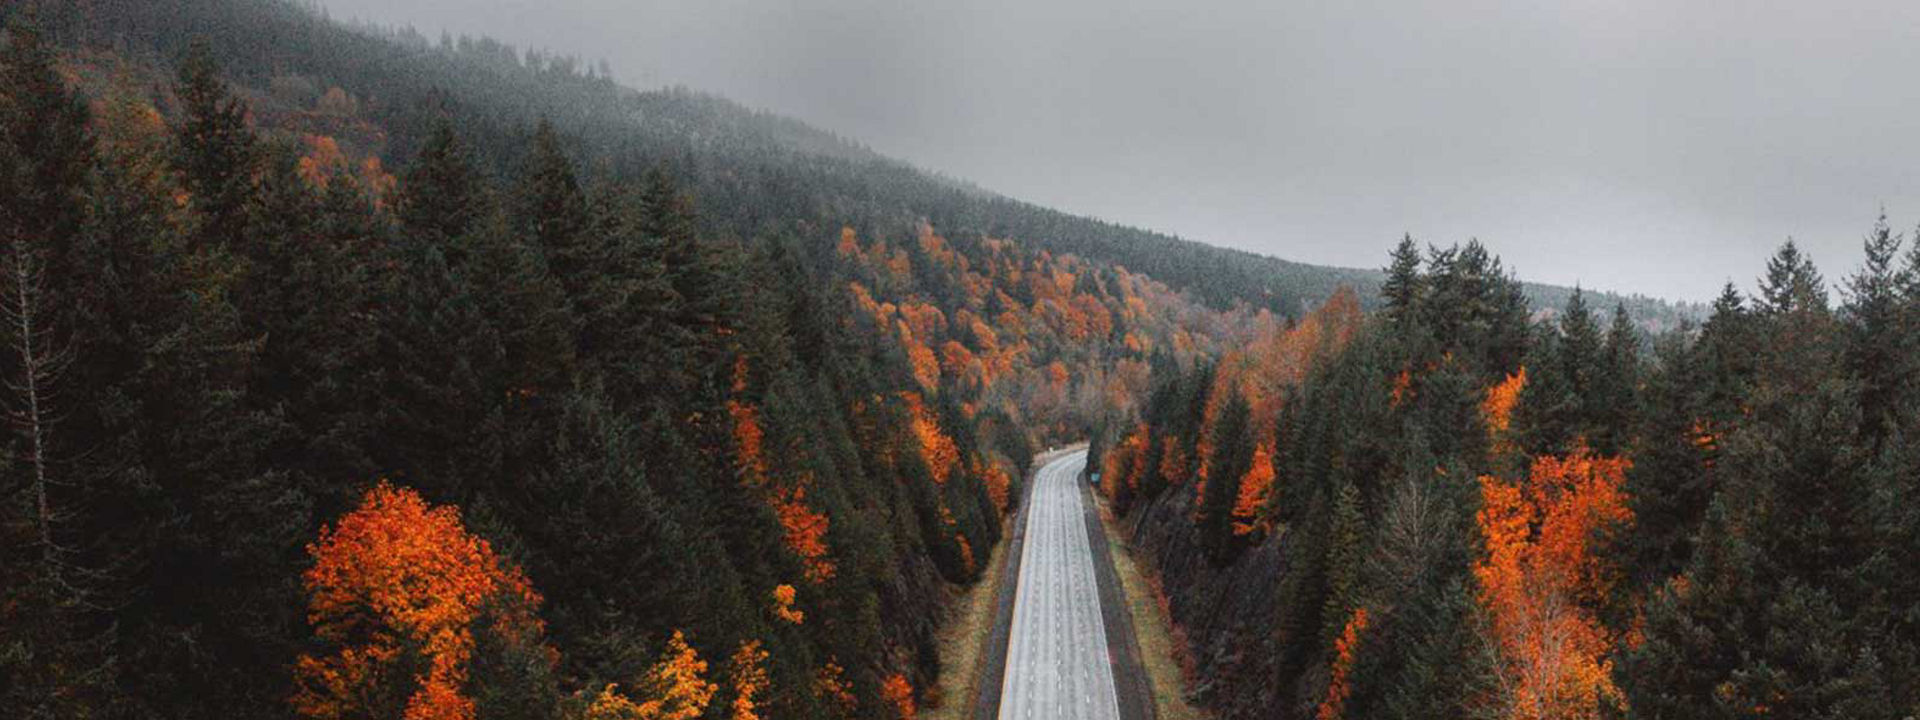 Prazna cesta skozi gozd jeseni, ki simbolizira, da so pnevmatike Weather Control primerne za vse letne čase